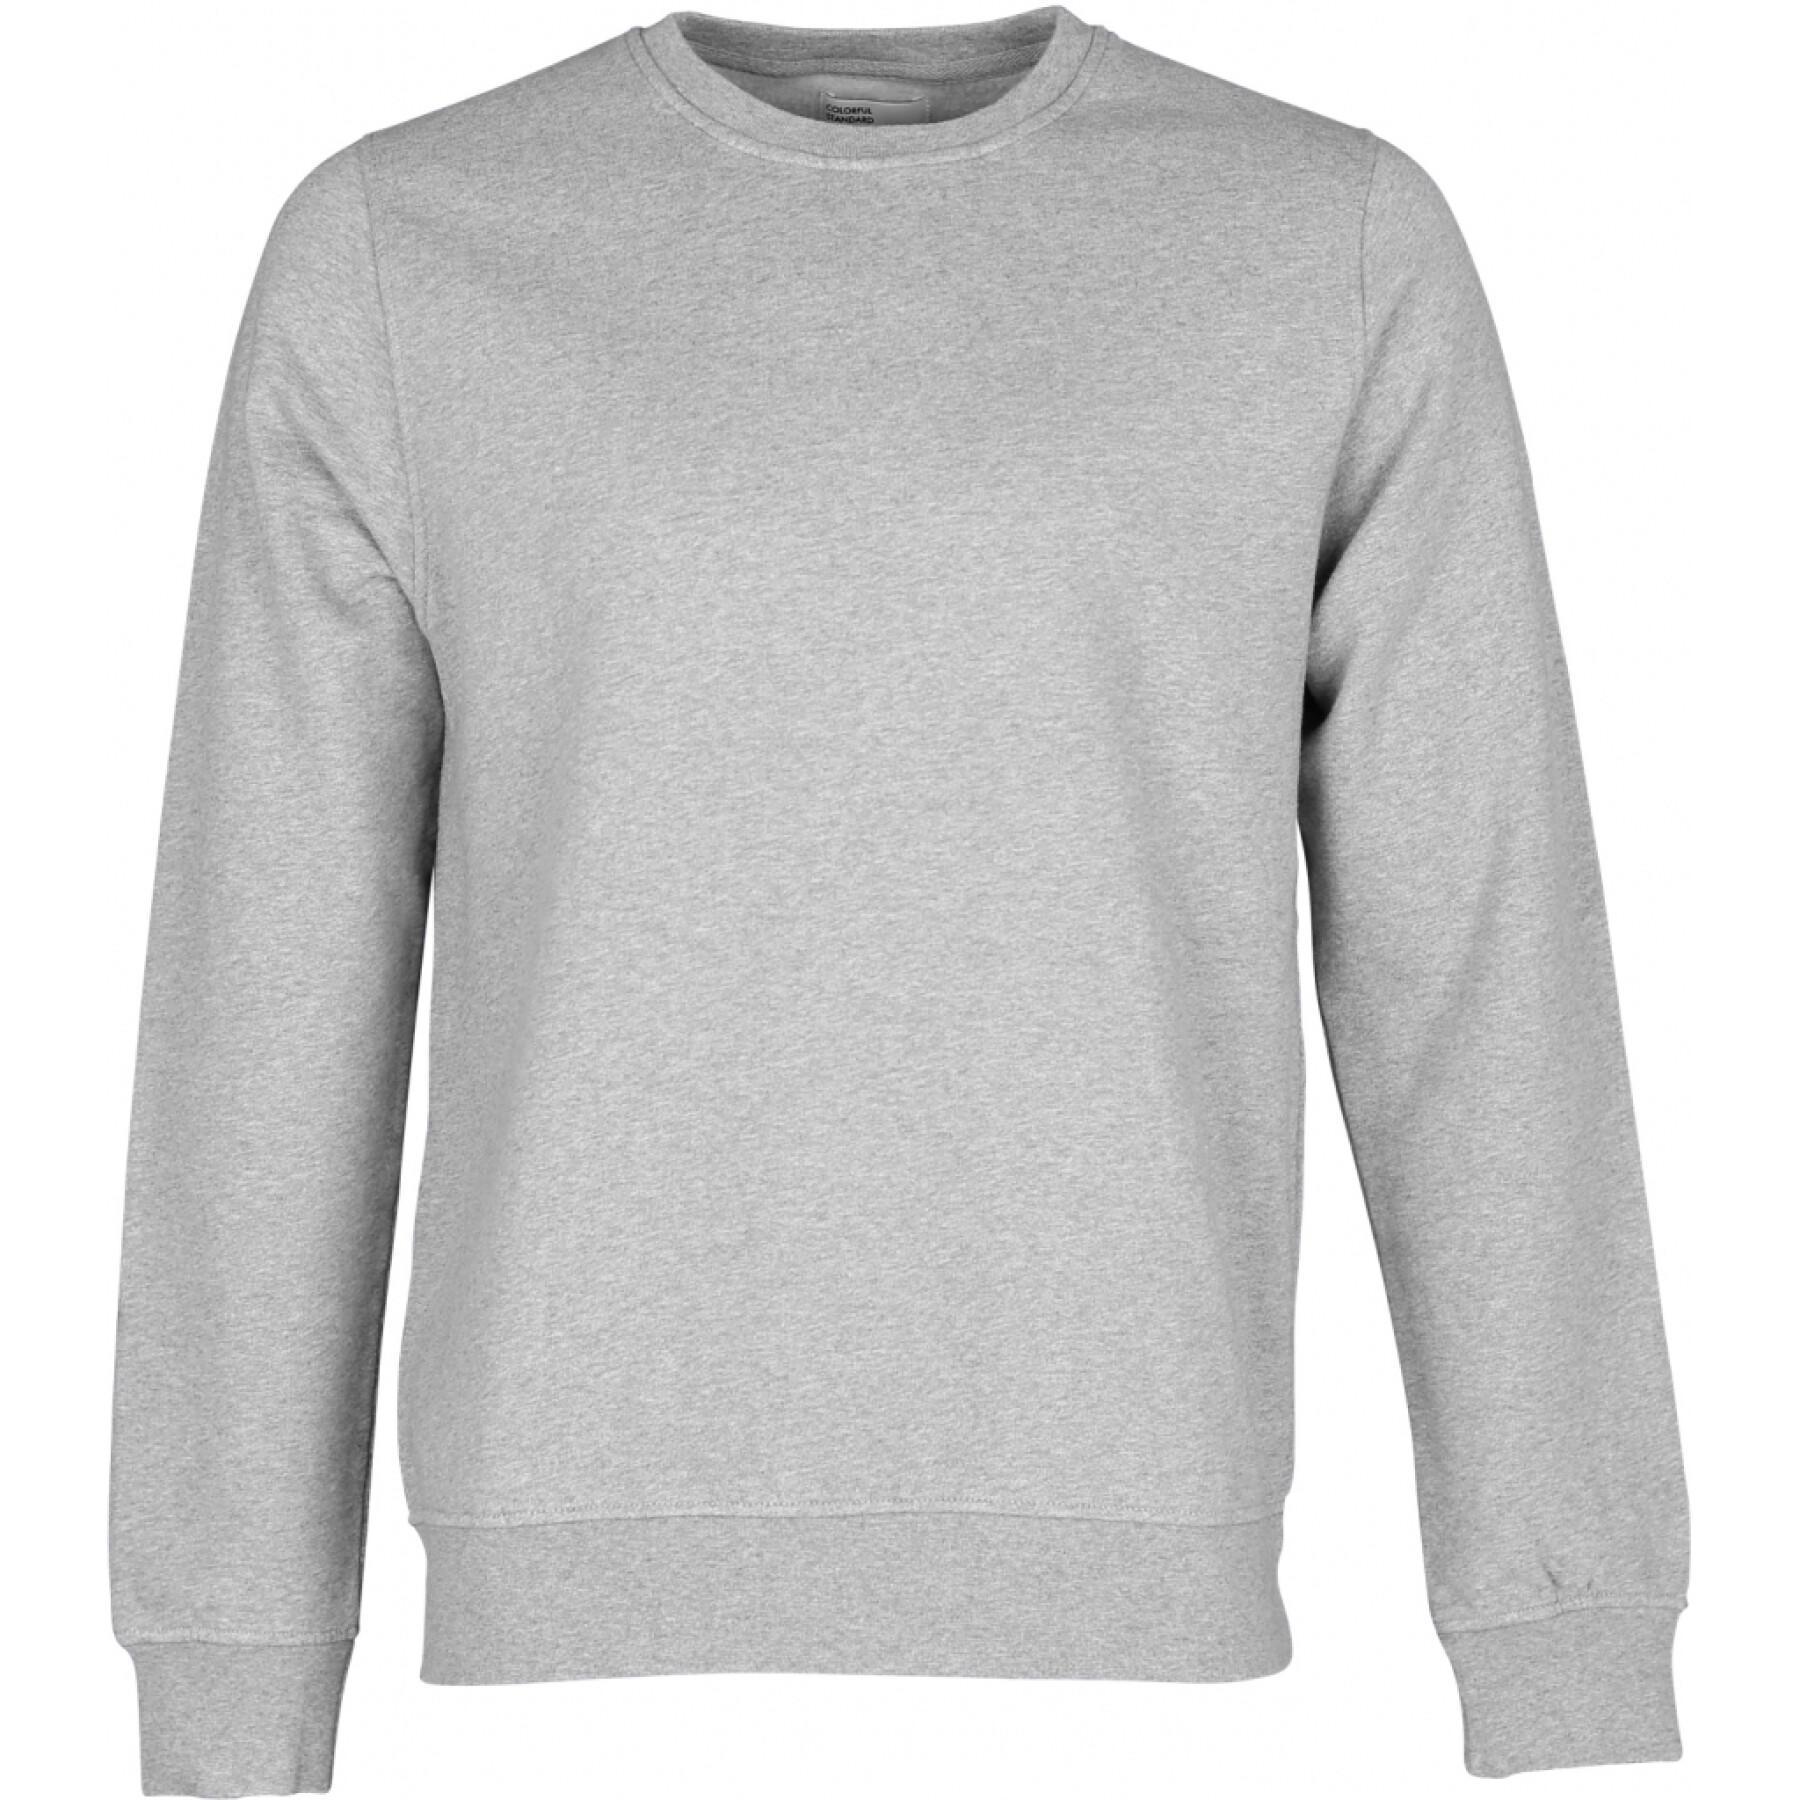 Sweatshirt mit Rundhalsausschnitt Colorful Standard Classic Organic heather grey